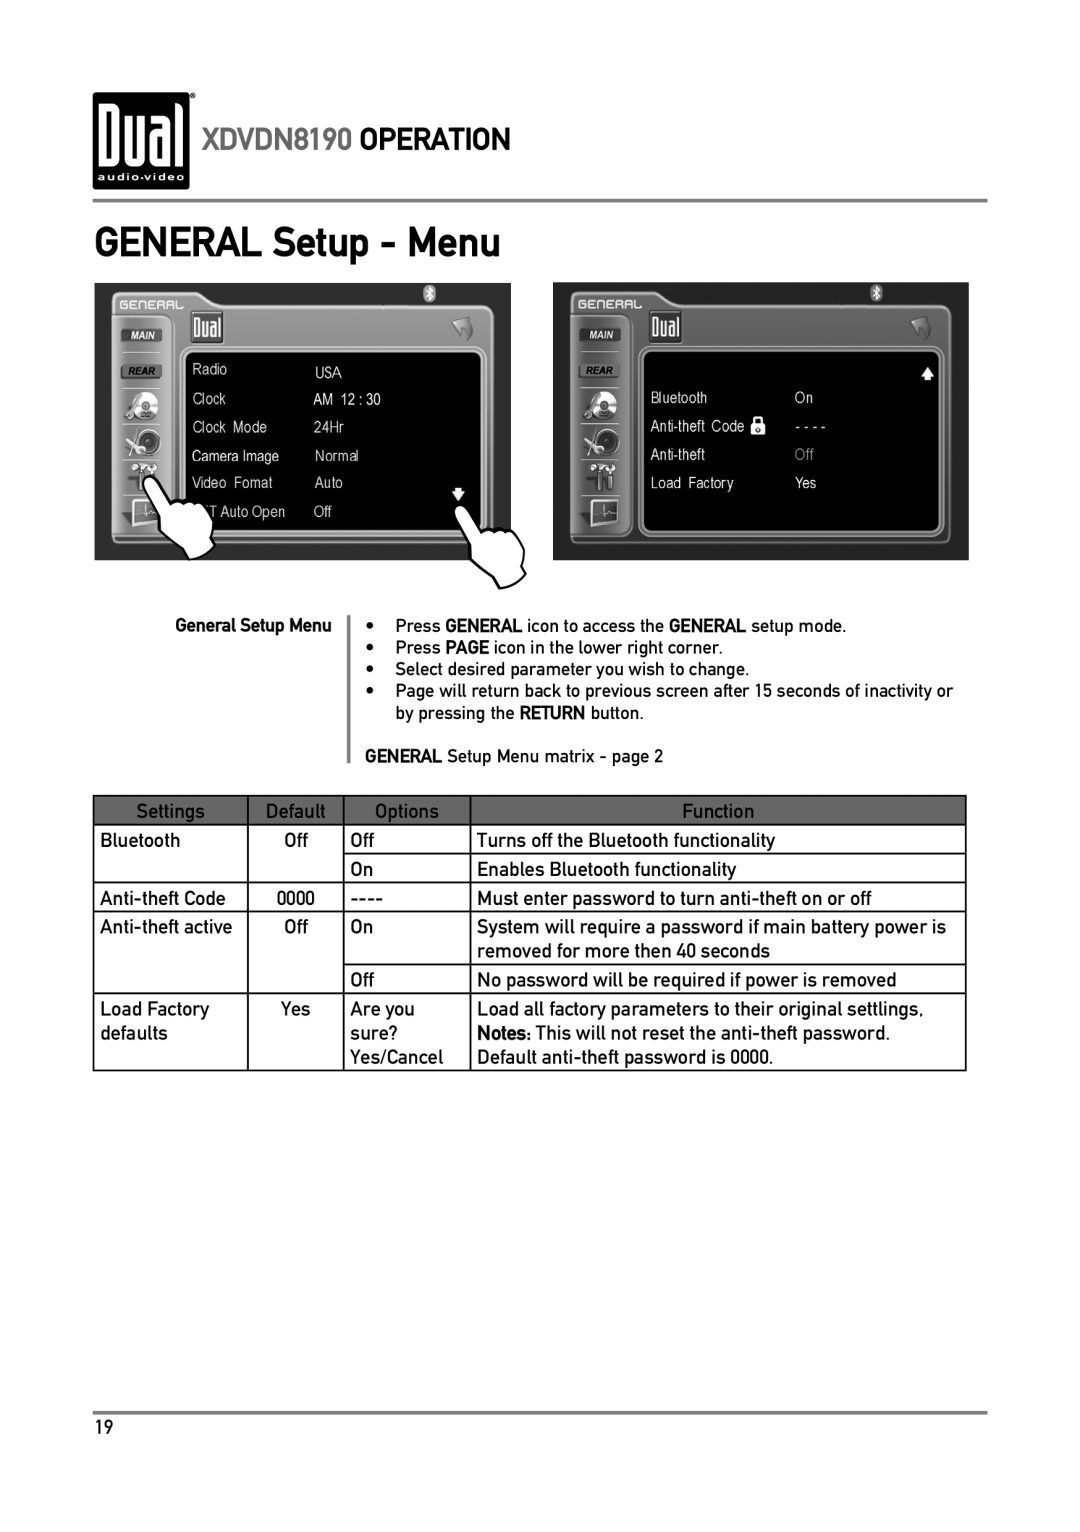 Dual owner manual GENERAL Setup - Menu, XDVDN8190 OPERATION, General Setup Menu 